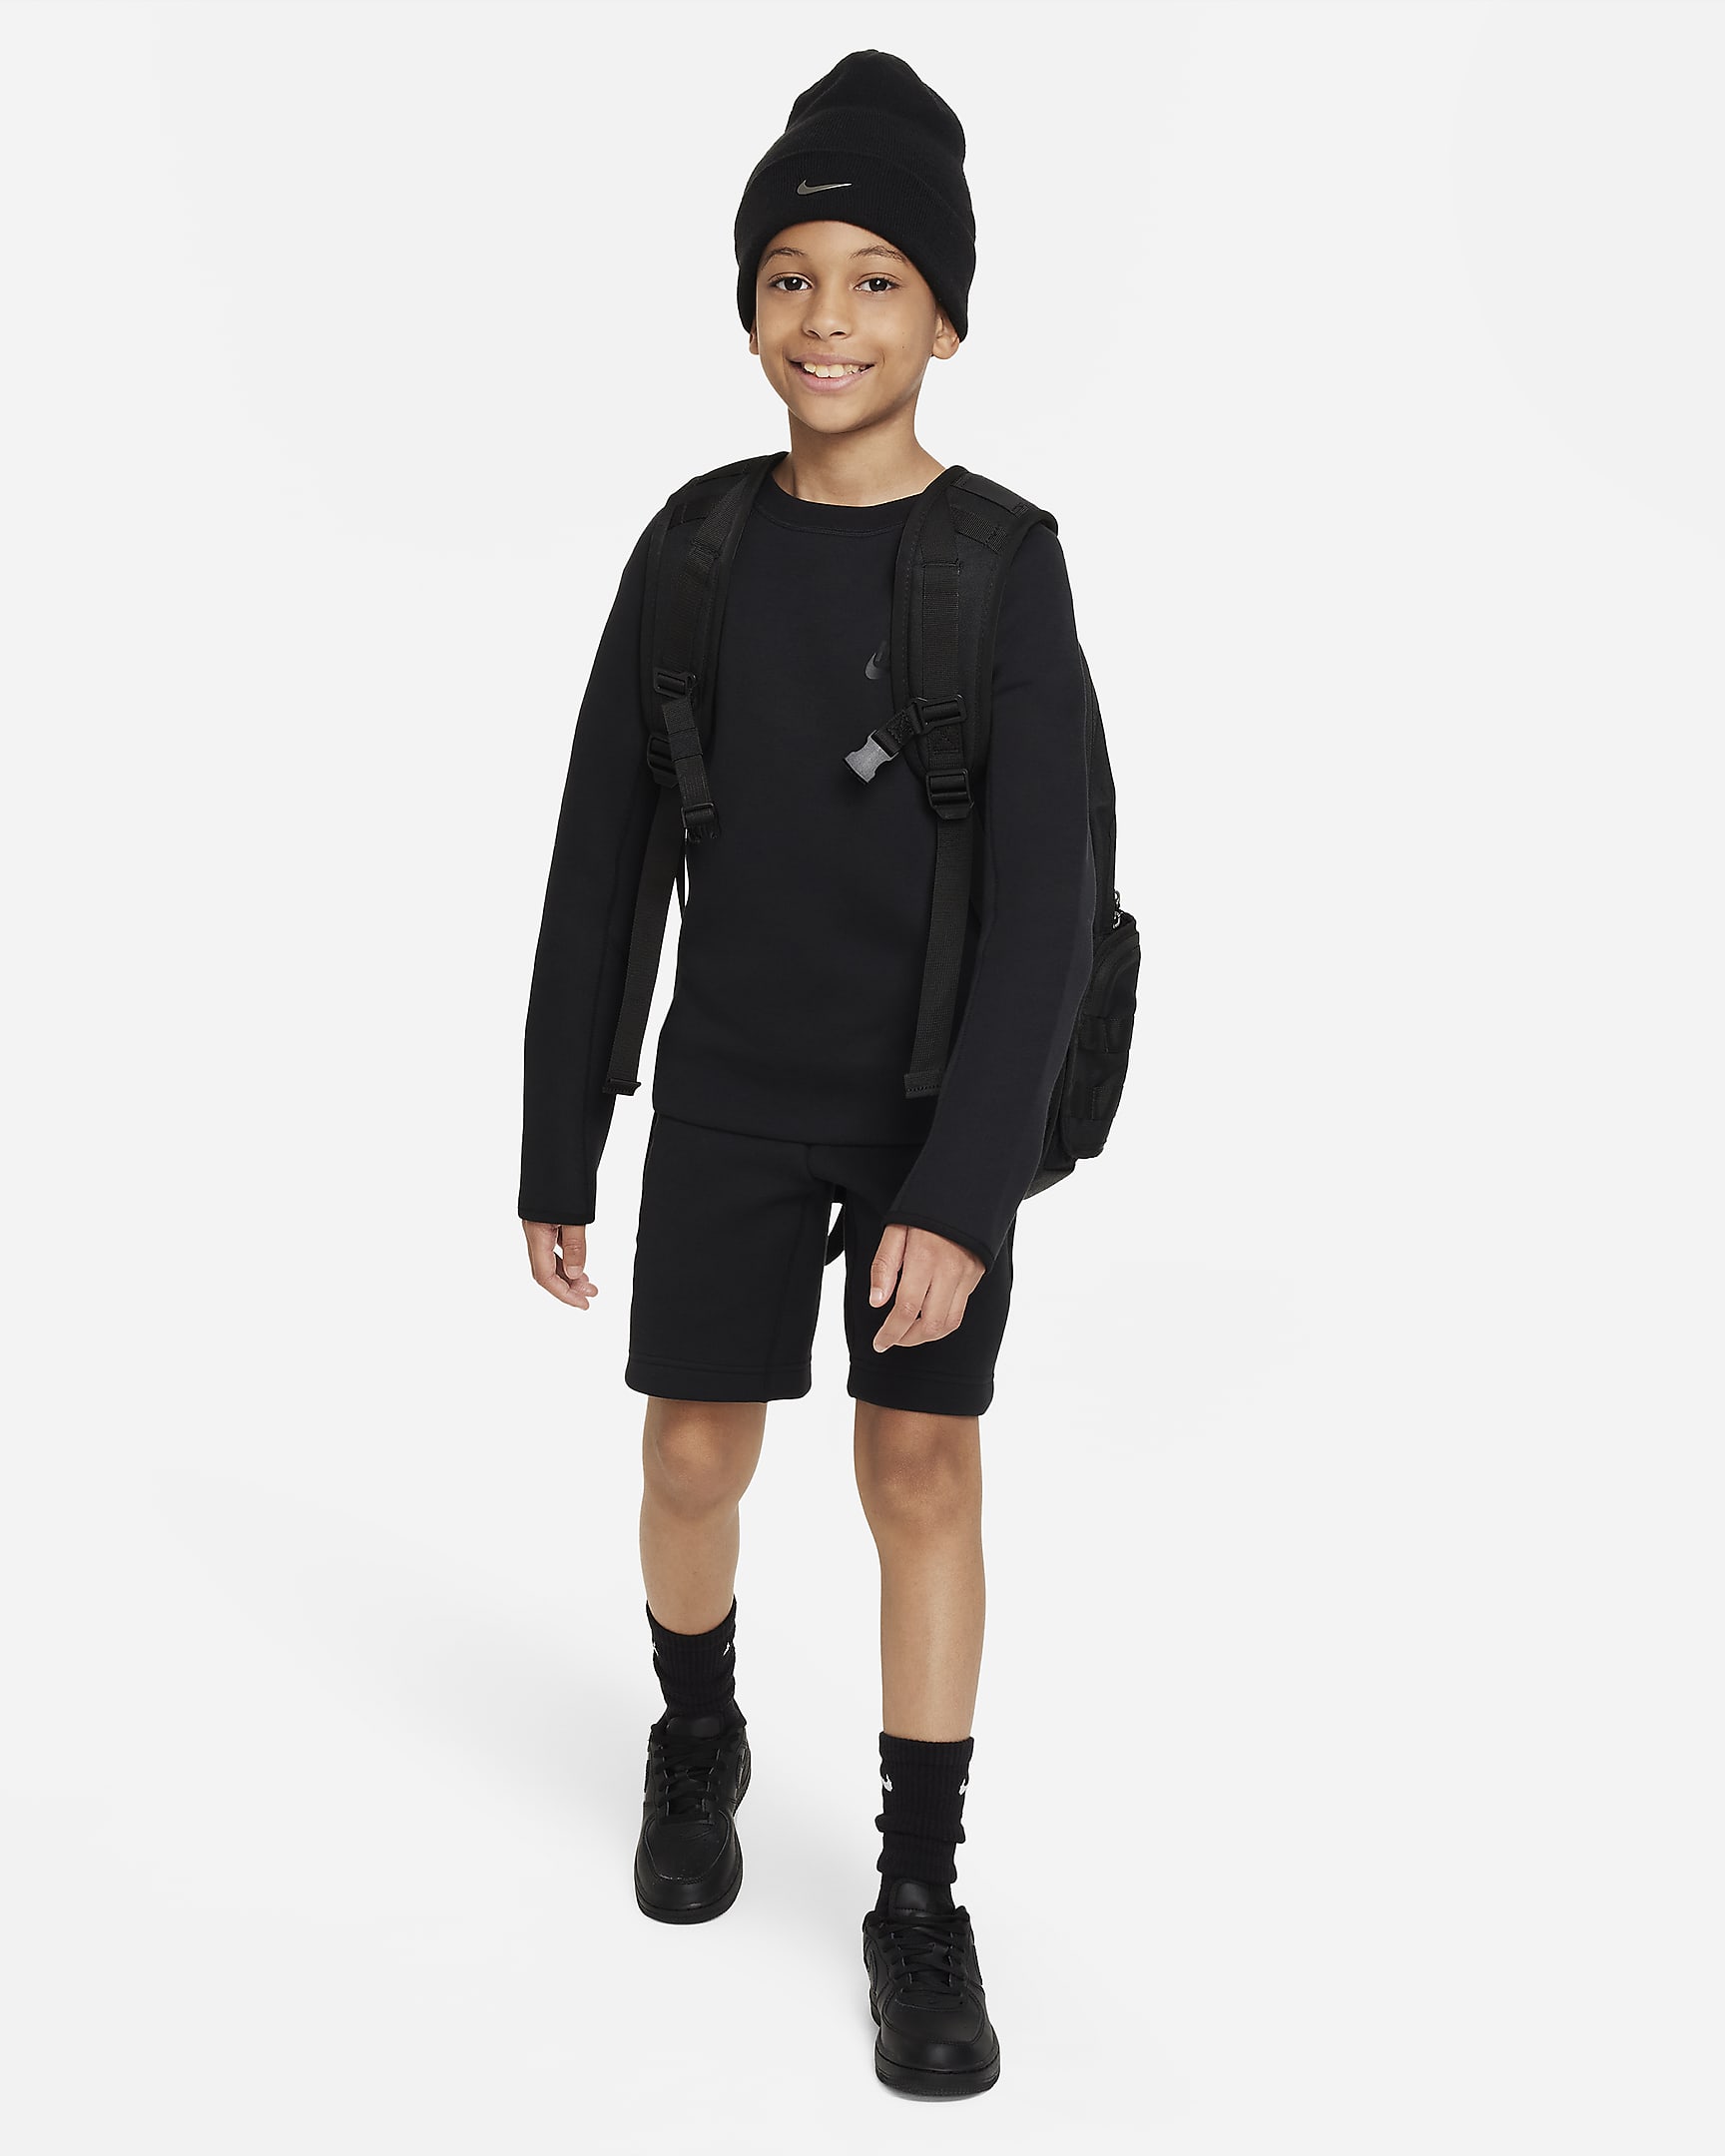 Nike Sportswear Tech Fleece Older Kids' (Boys') Sweatshirt. Nike BG